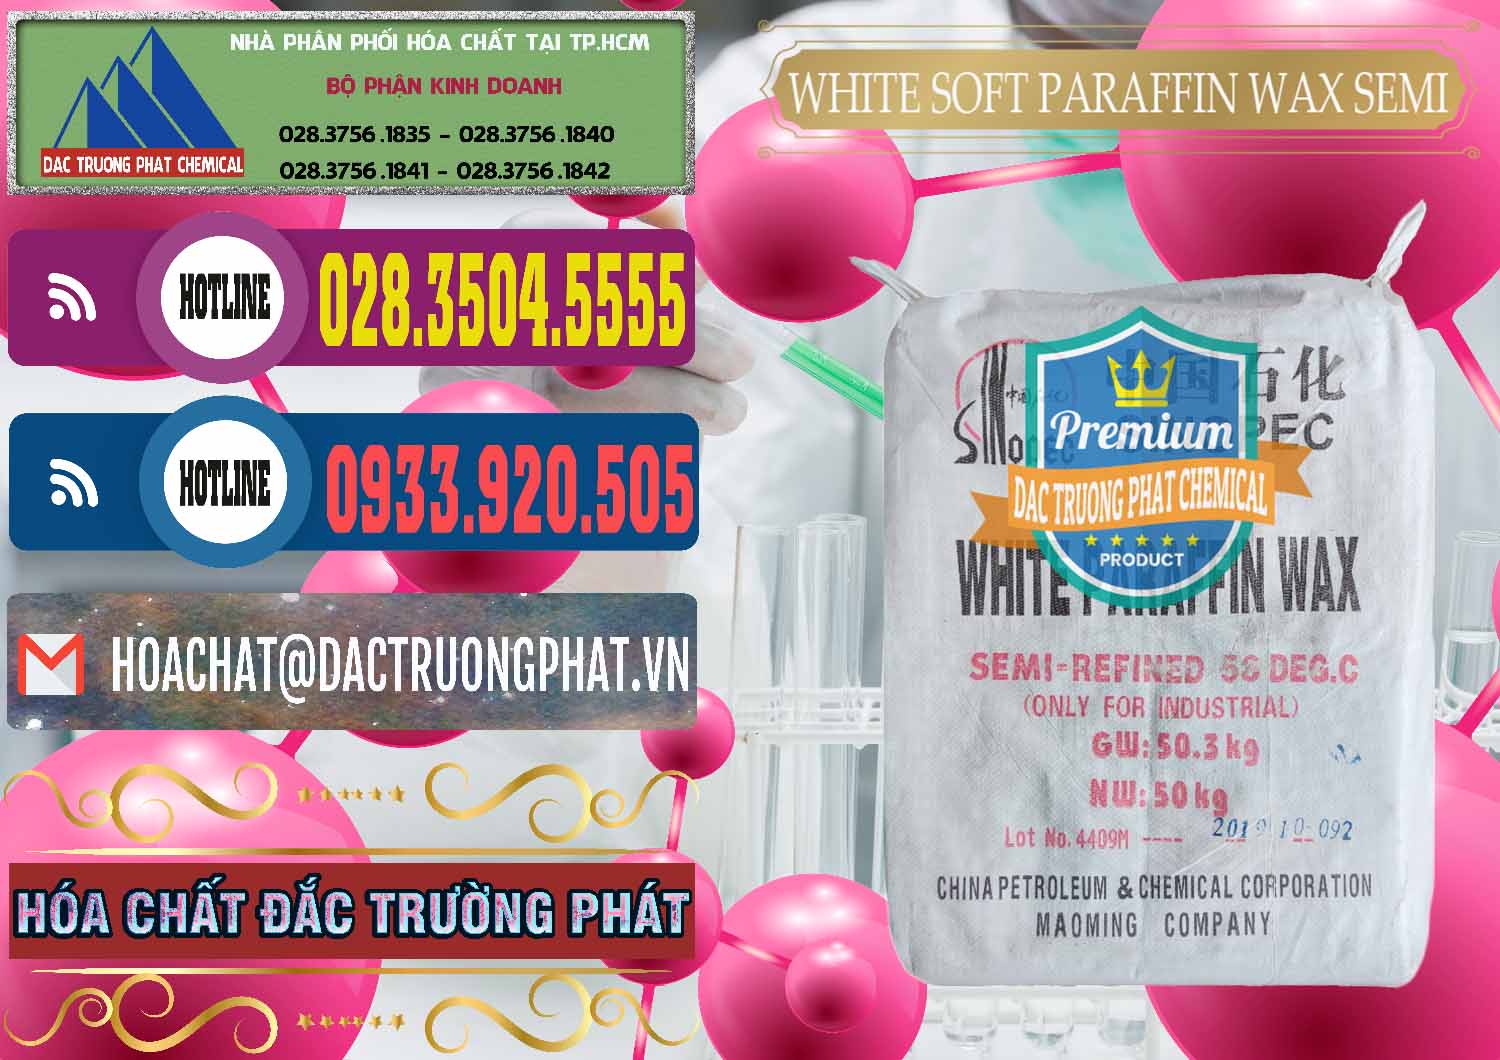 Nhà cung cấp & bán Sáp Paraffin Wax Sinopec Trung Quốc China - 0328 - Cty phân phối & cung ứng hóa chất tại TP.HCM - muabanhoachat.com.vn